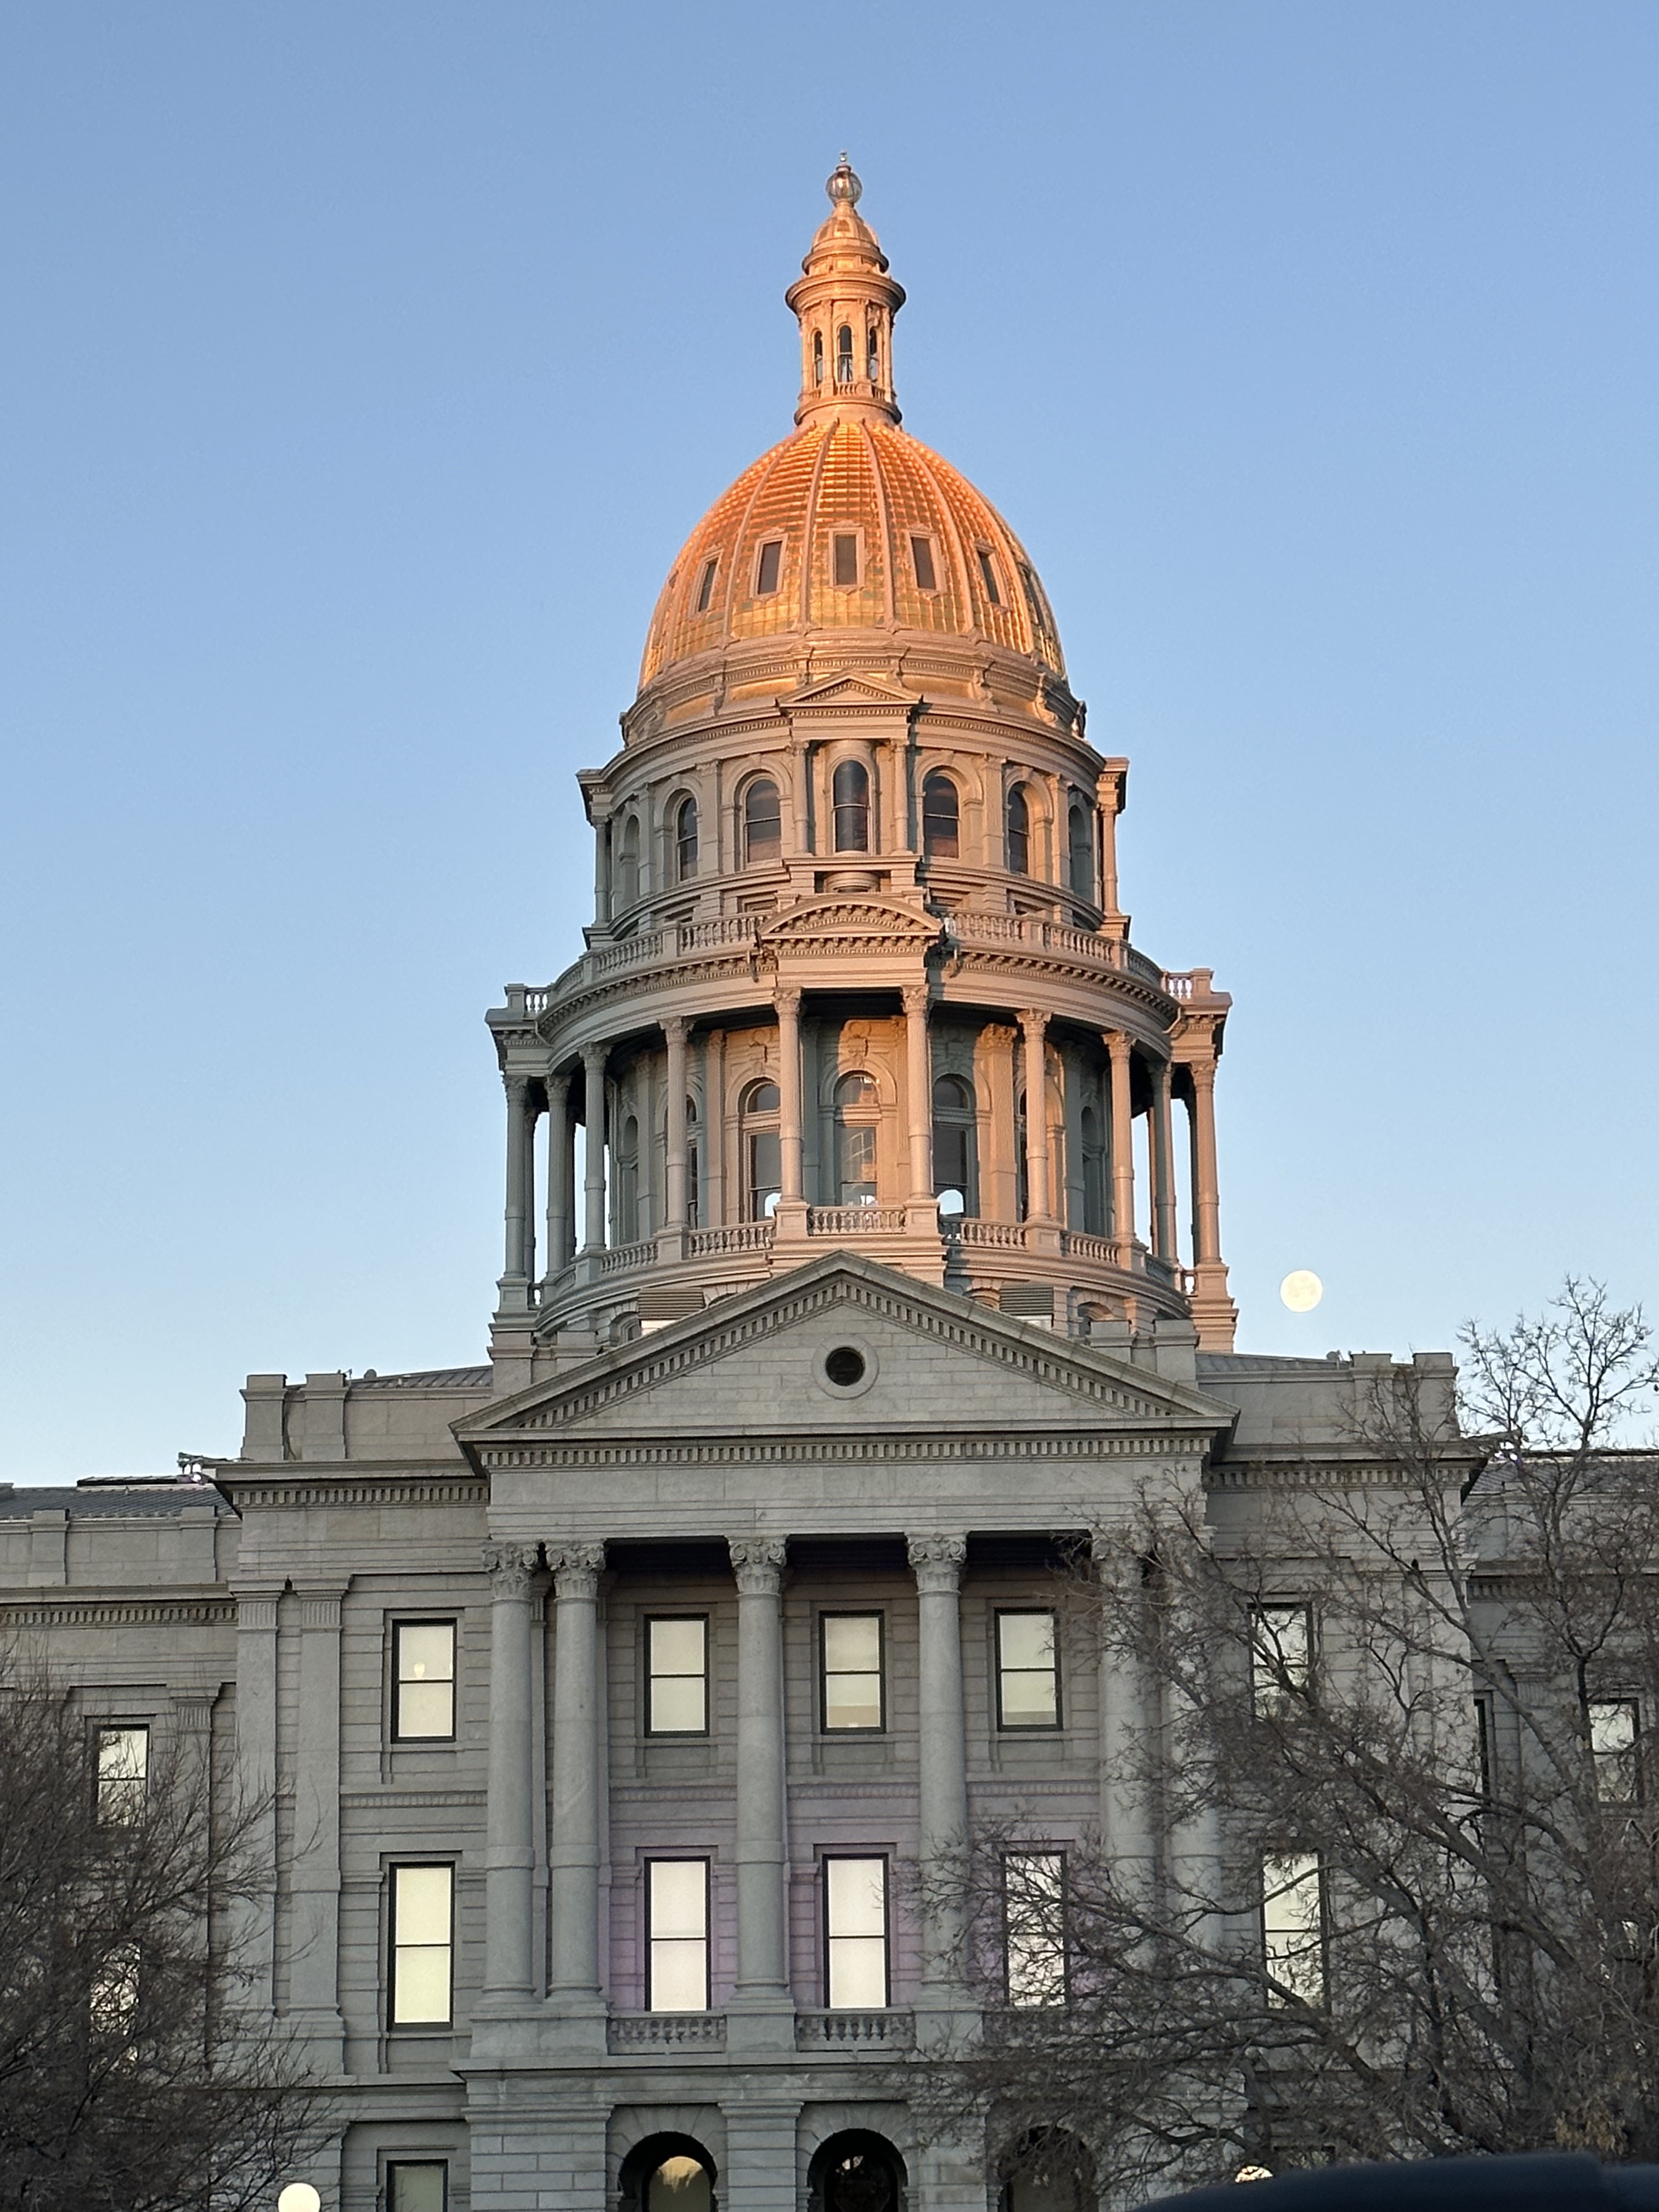 Colorado Capitol